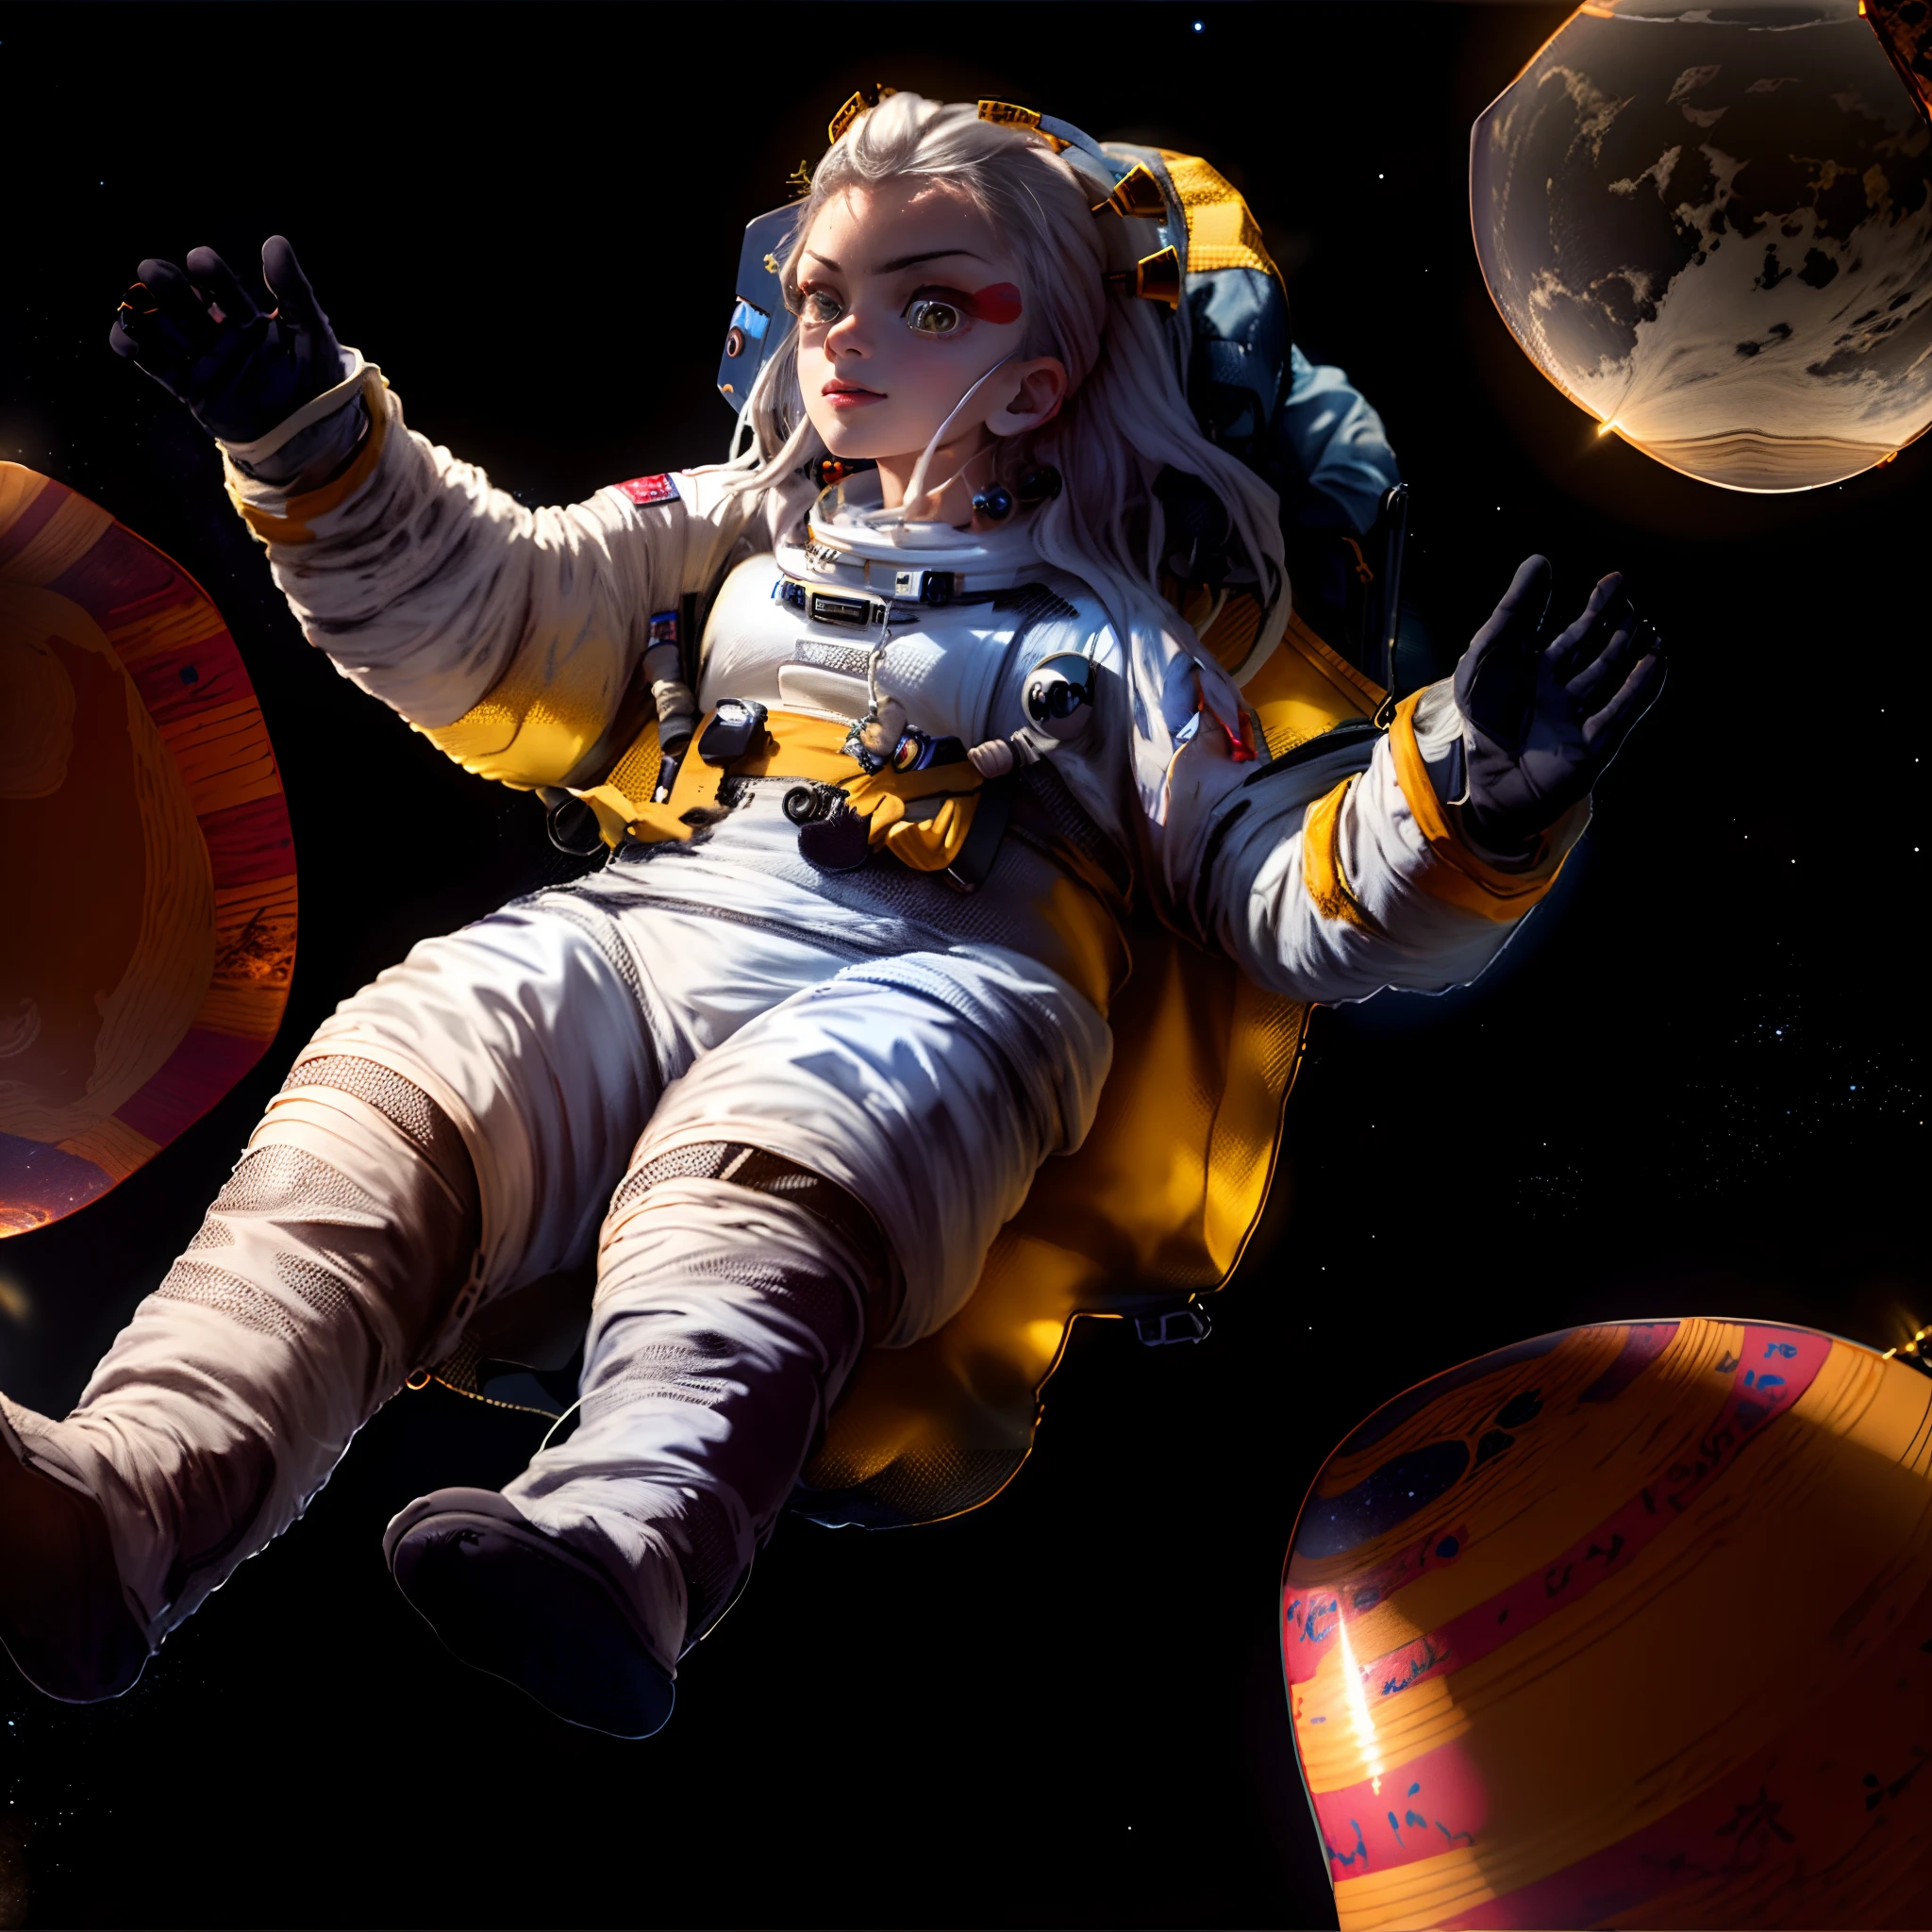 걸작, 최고의 품질, 다키V4, 여자 1명, 홀로, 짧은 머리, 더 하얀 머리카락, 노란 눈, 머리 장식, astronaut 우주에 떠 있는 with planets and planets in the background, 우주의 소녀, 우주 공간에 떠 있는, 우주에 떠 있는, 우주복을 입고